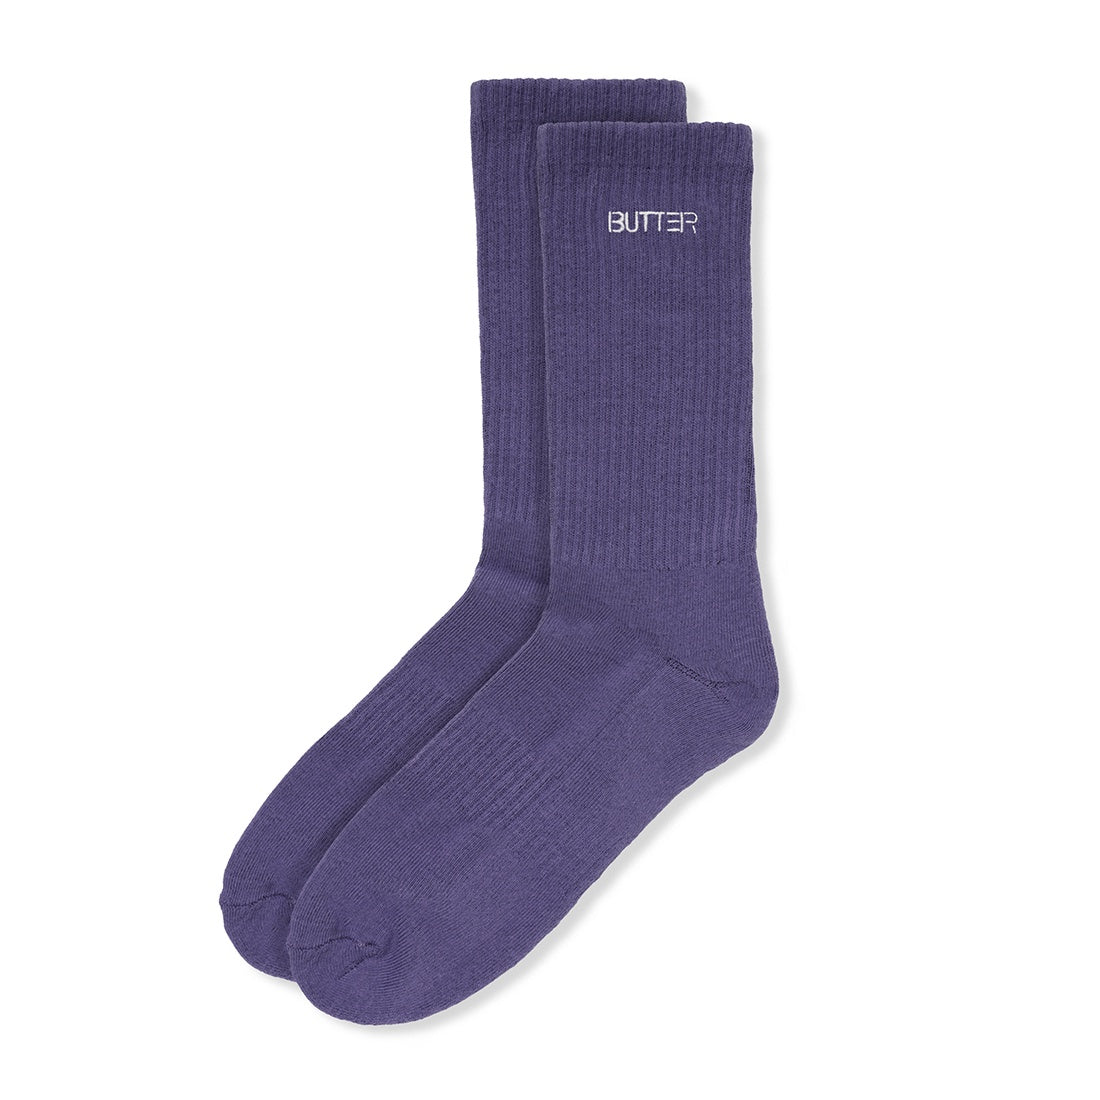 Equipt Socks Dusk Purple